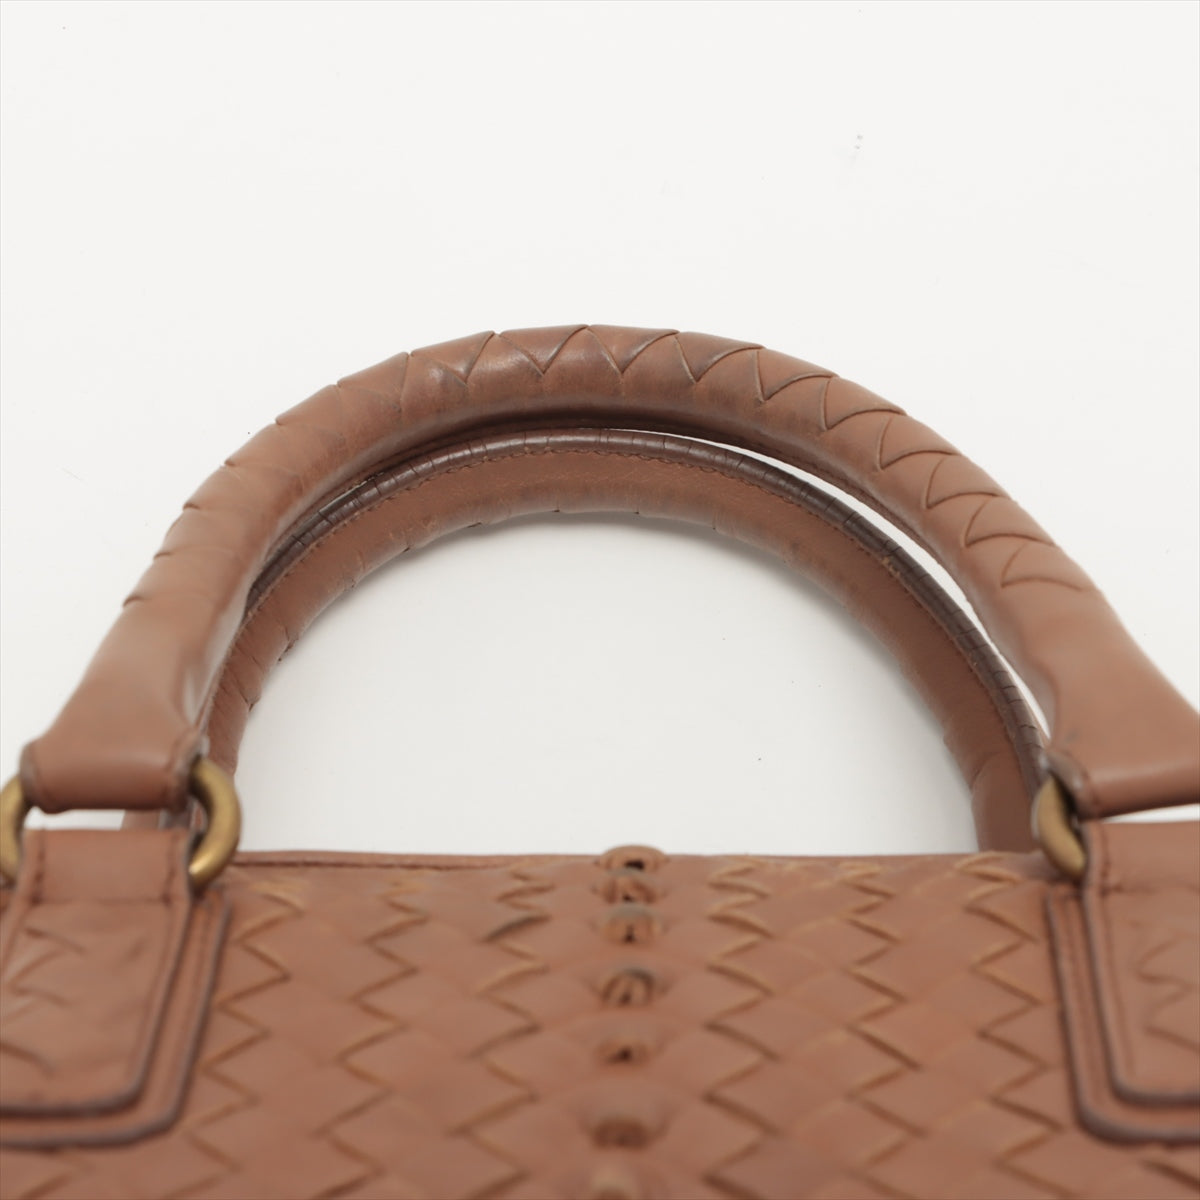 Bottega Veneta Intrecciato Leather Handbag Beige